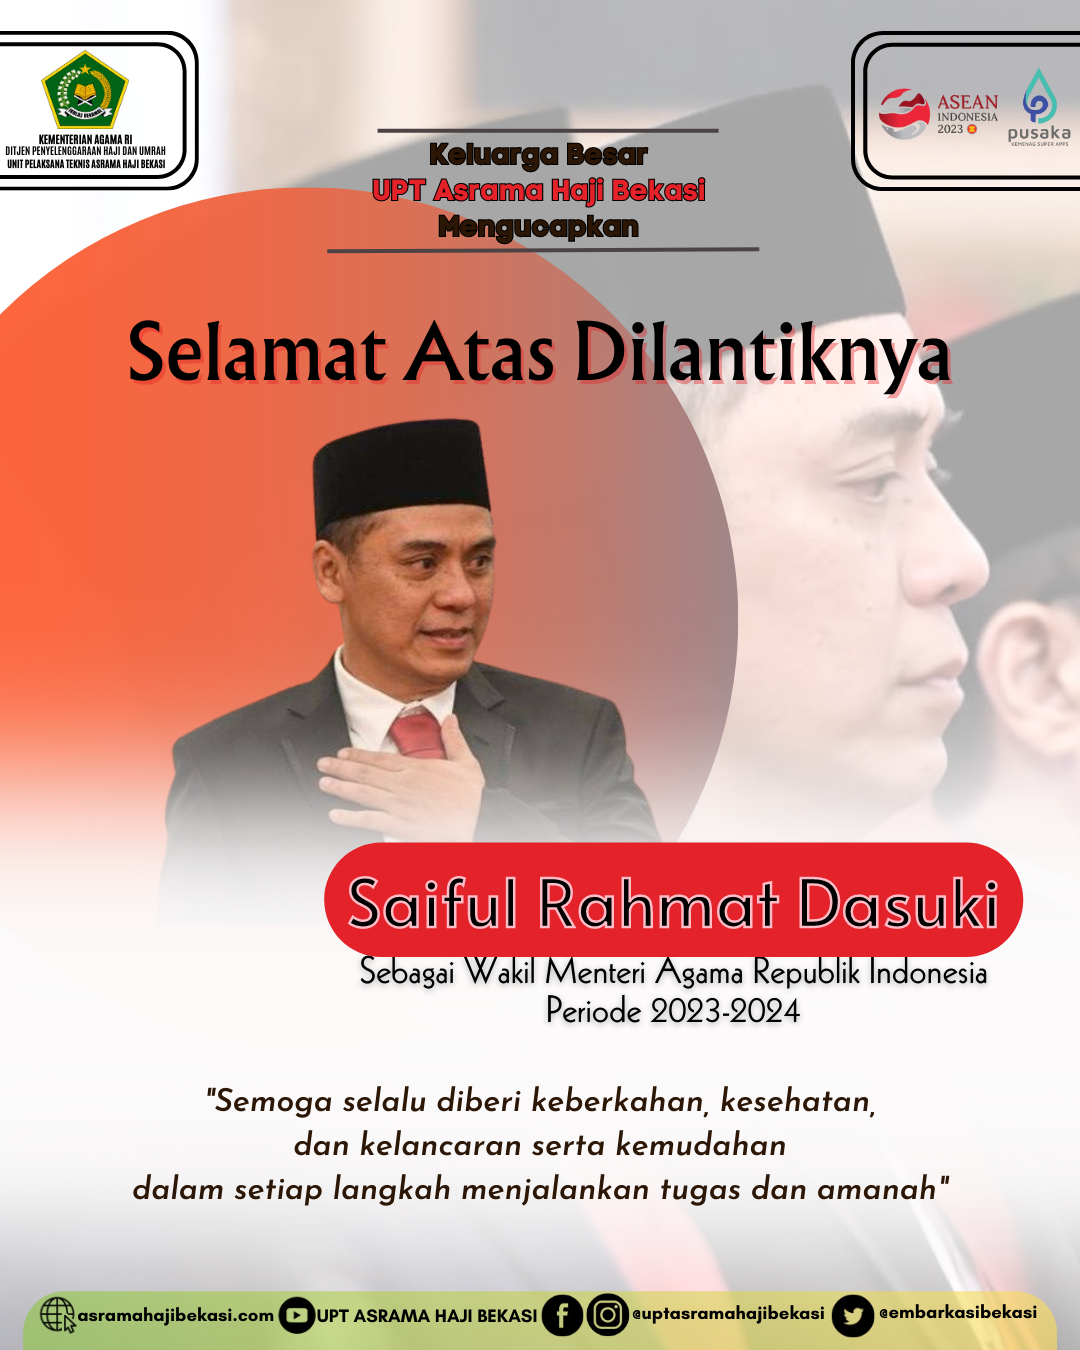 Unit Pelaksana Teknis Asrama Haji Bekasi Direktorat Jenderal Penyelenggaraan Haji dan Umrah Kementerian Agama Republik Indonesia